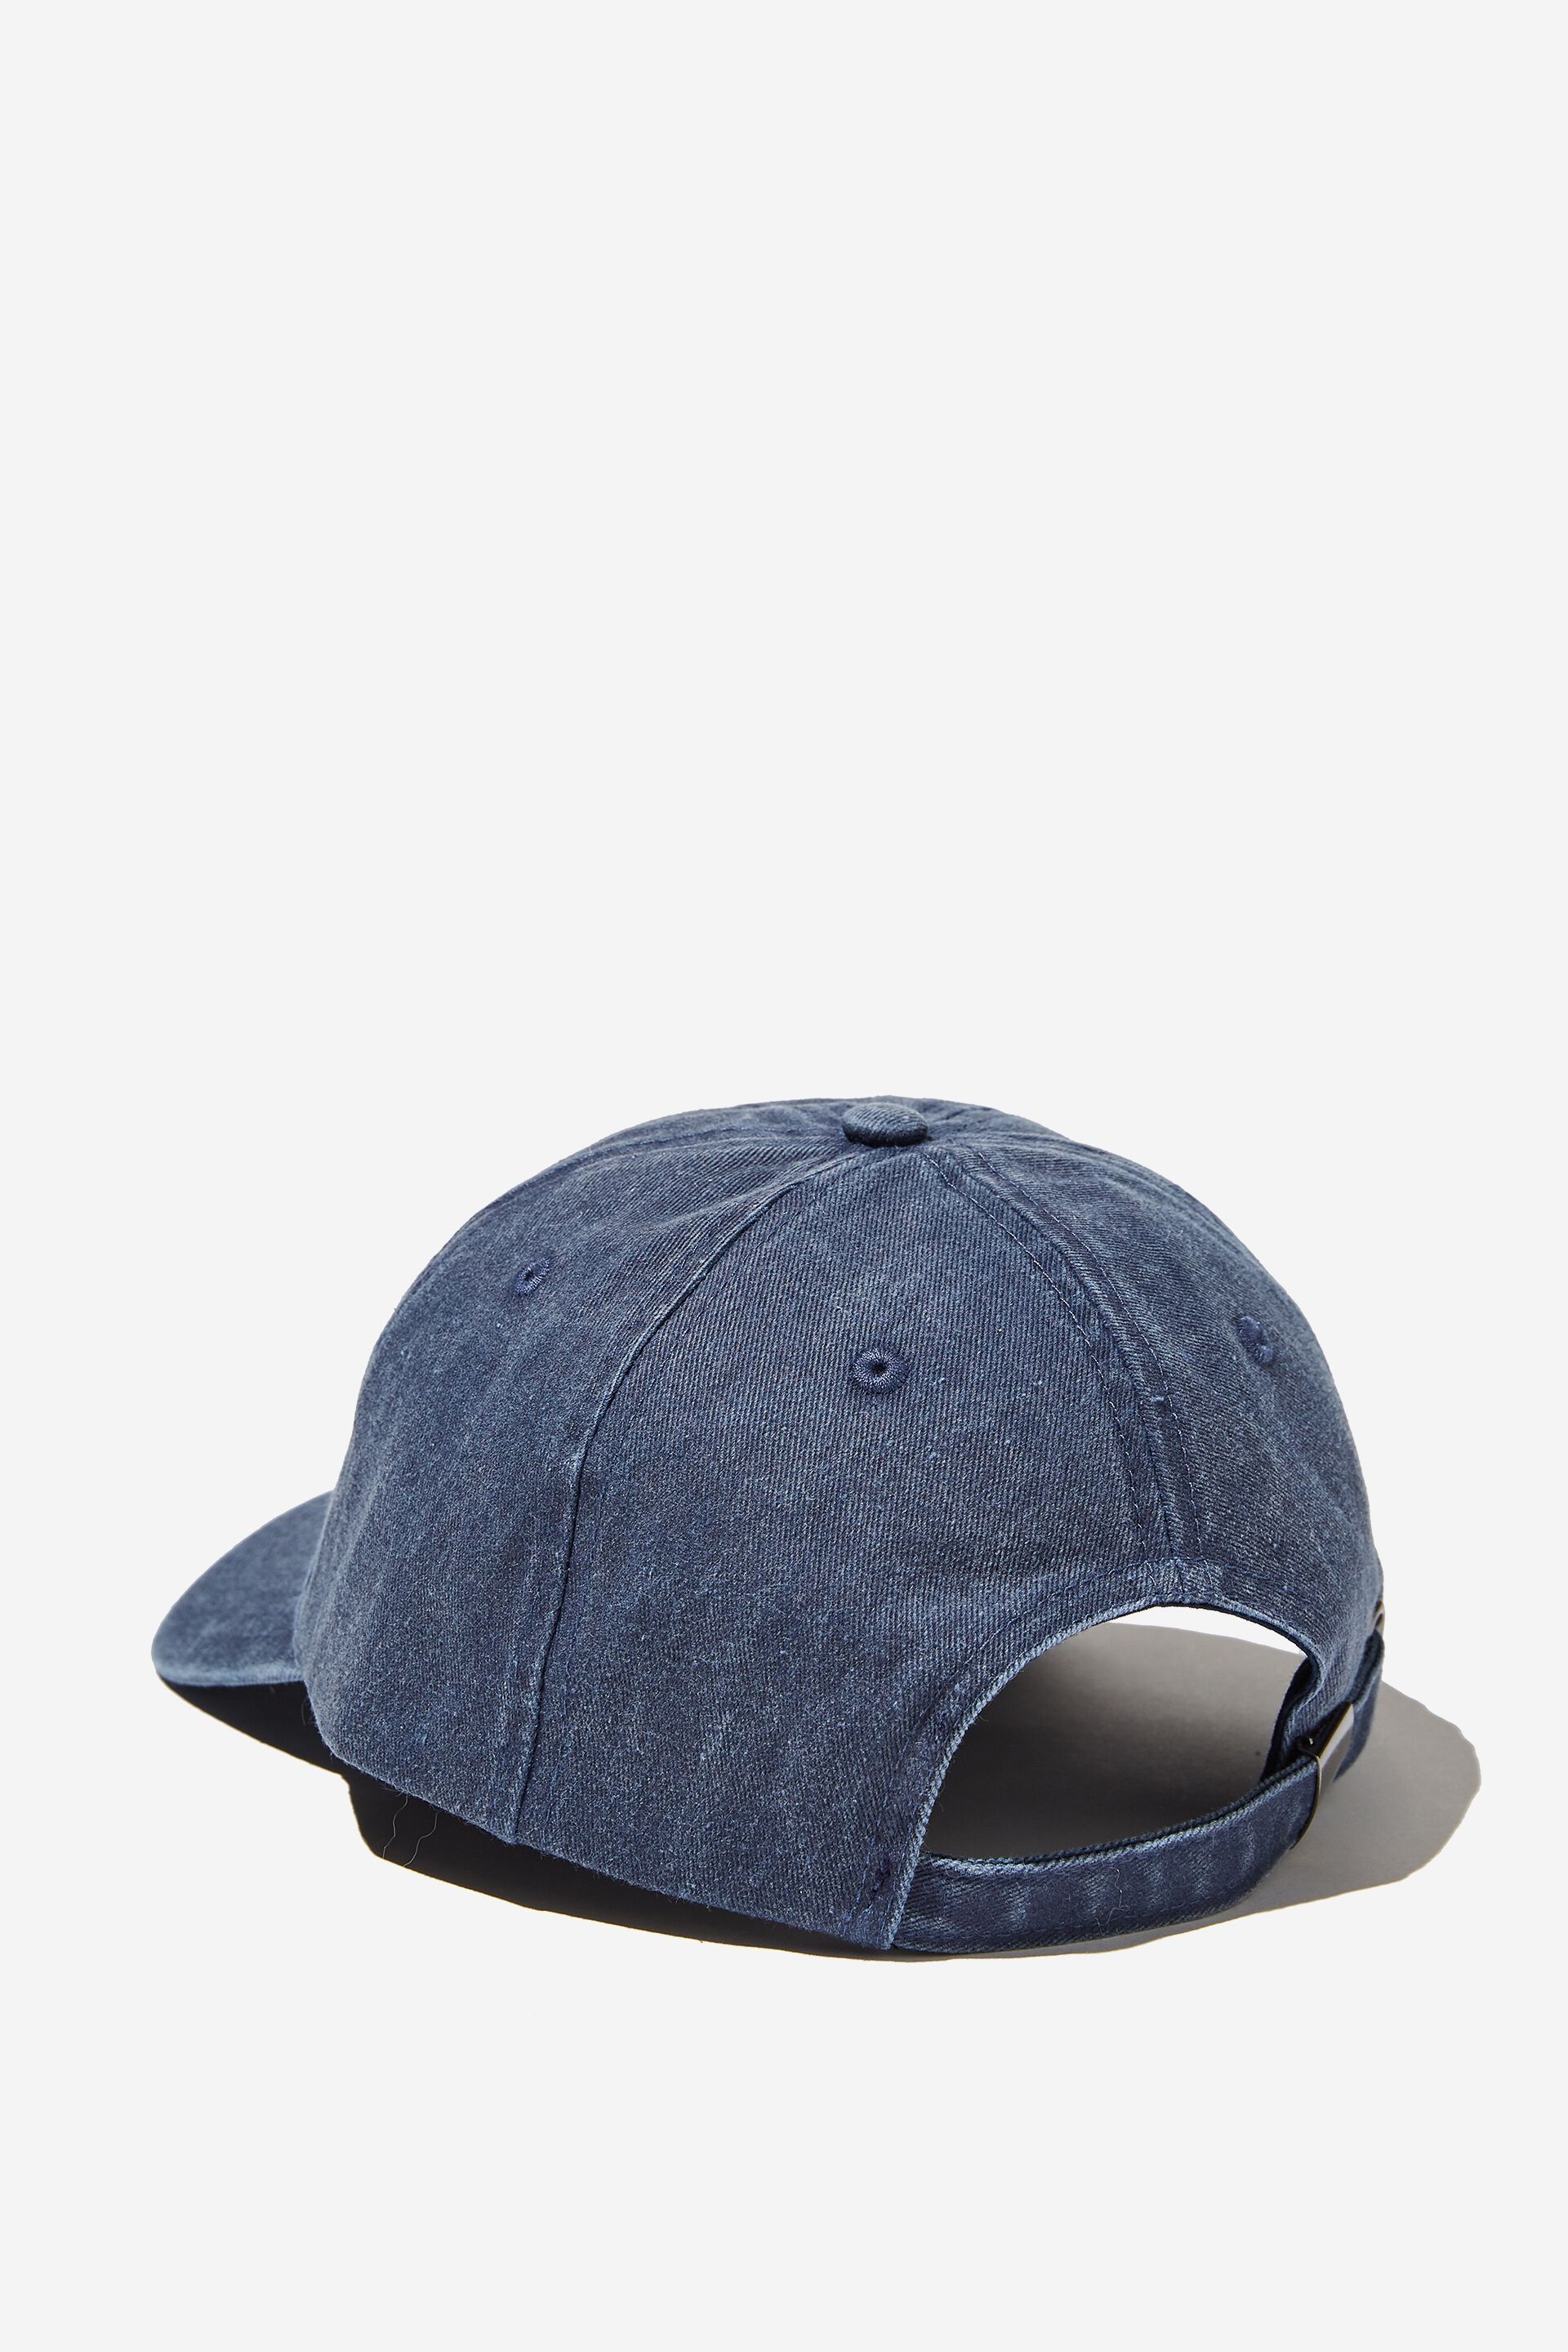 Men Hats | Vintage Strap Back Hat - KY43477